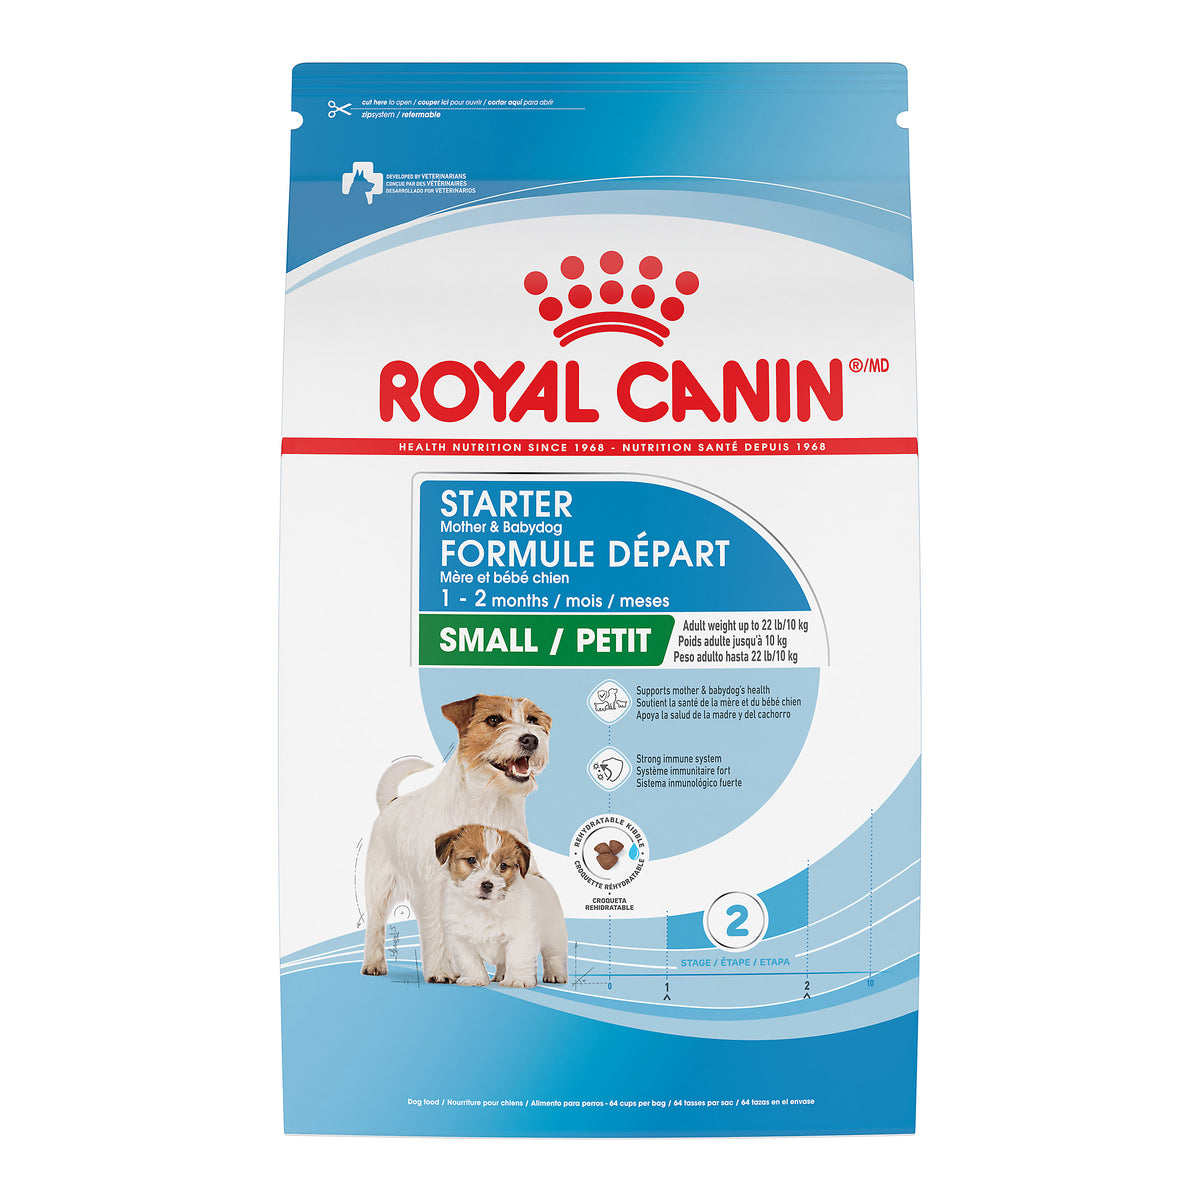 Royal Canin - FORMULE DÉPART MÈRE ET BÉBÉ CHIEN – nourriture sèche pour chiots (2.5lb)